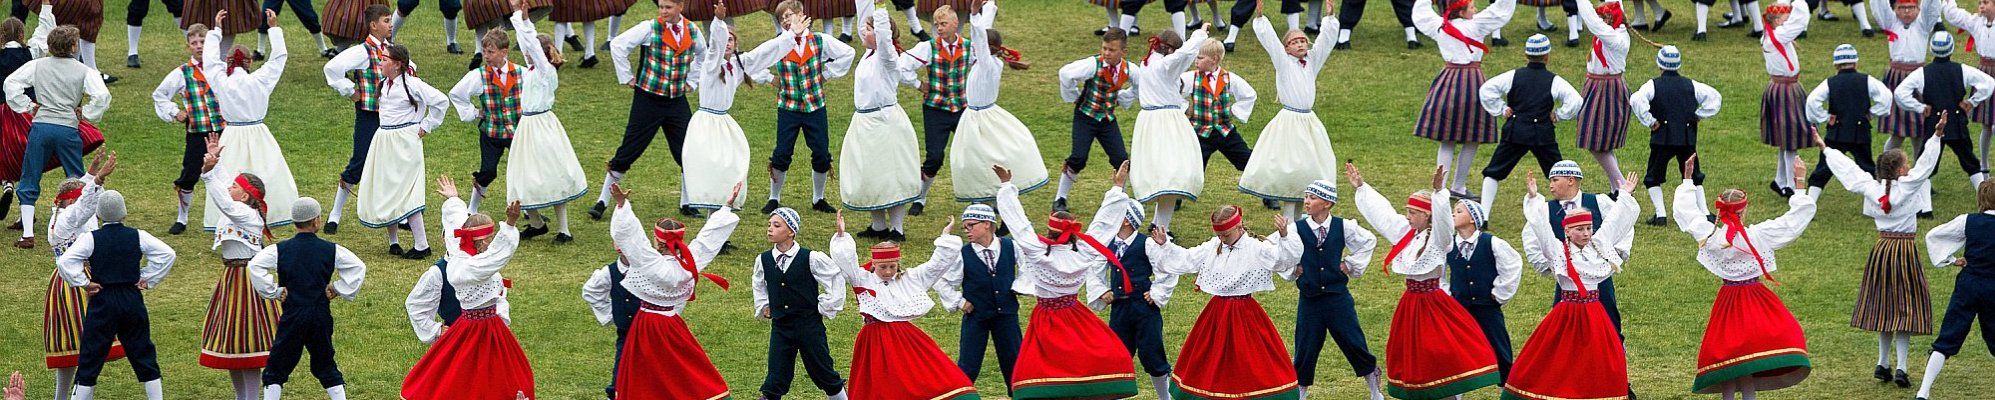 Sängerfest in Tallinn - Partner-Reisen - Reisen nach Ostpreußen, in das Baltikum, nach Russland und Polen